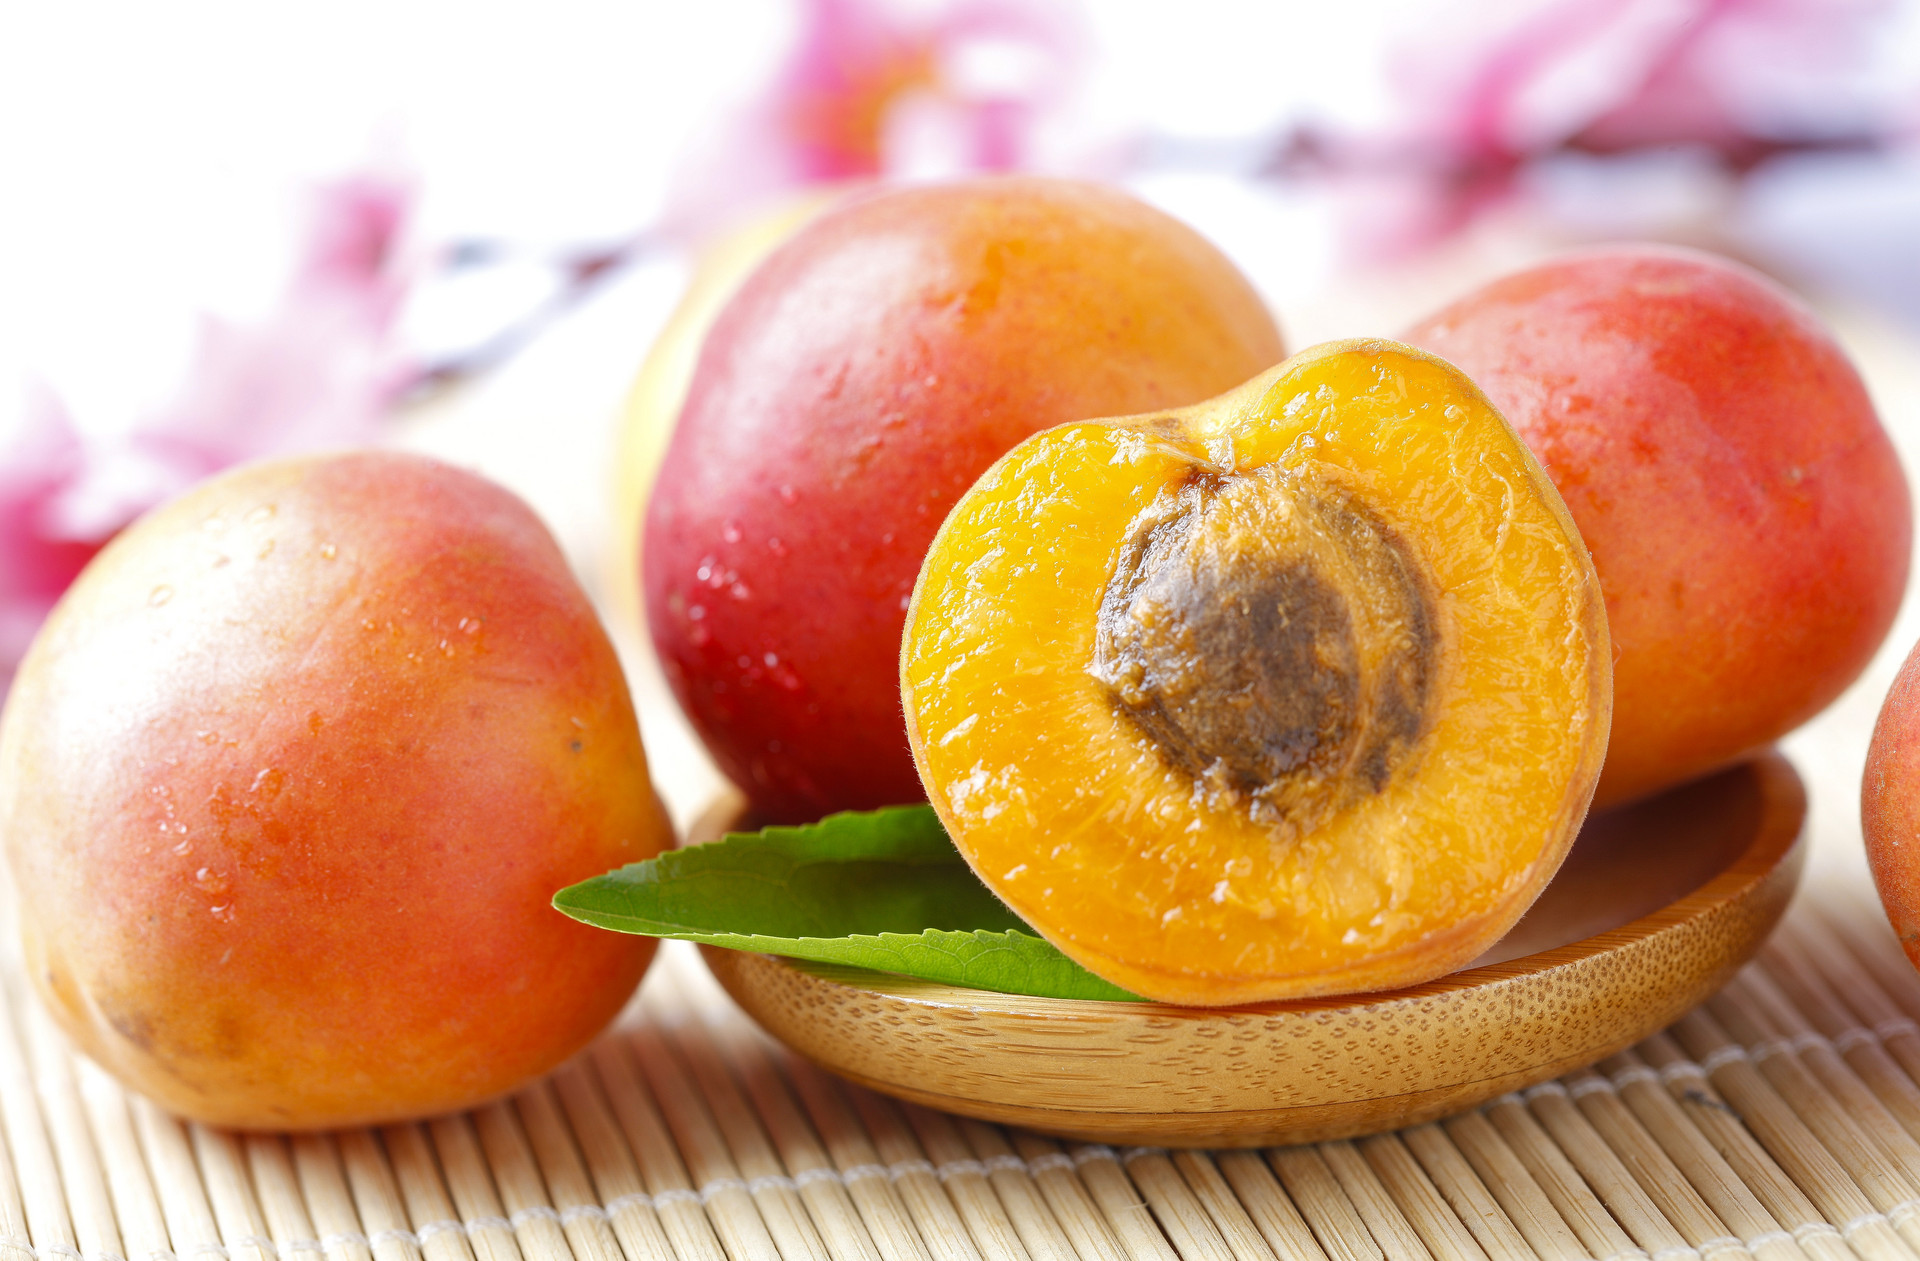 黄桃可以和柚子一起吃吗